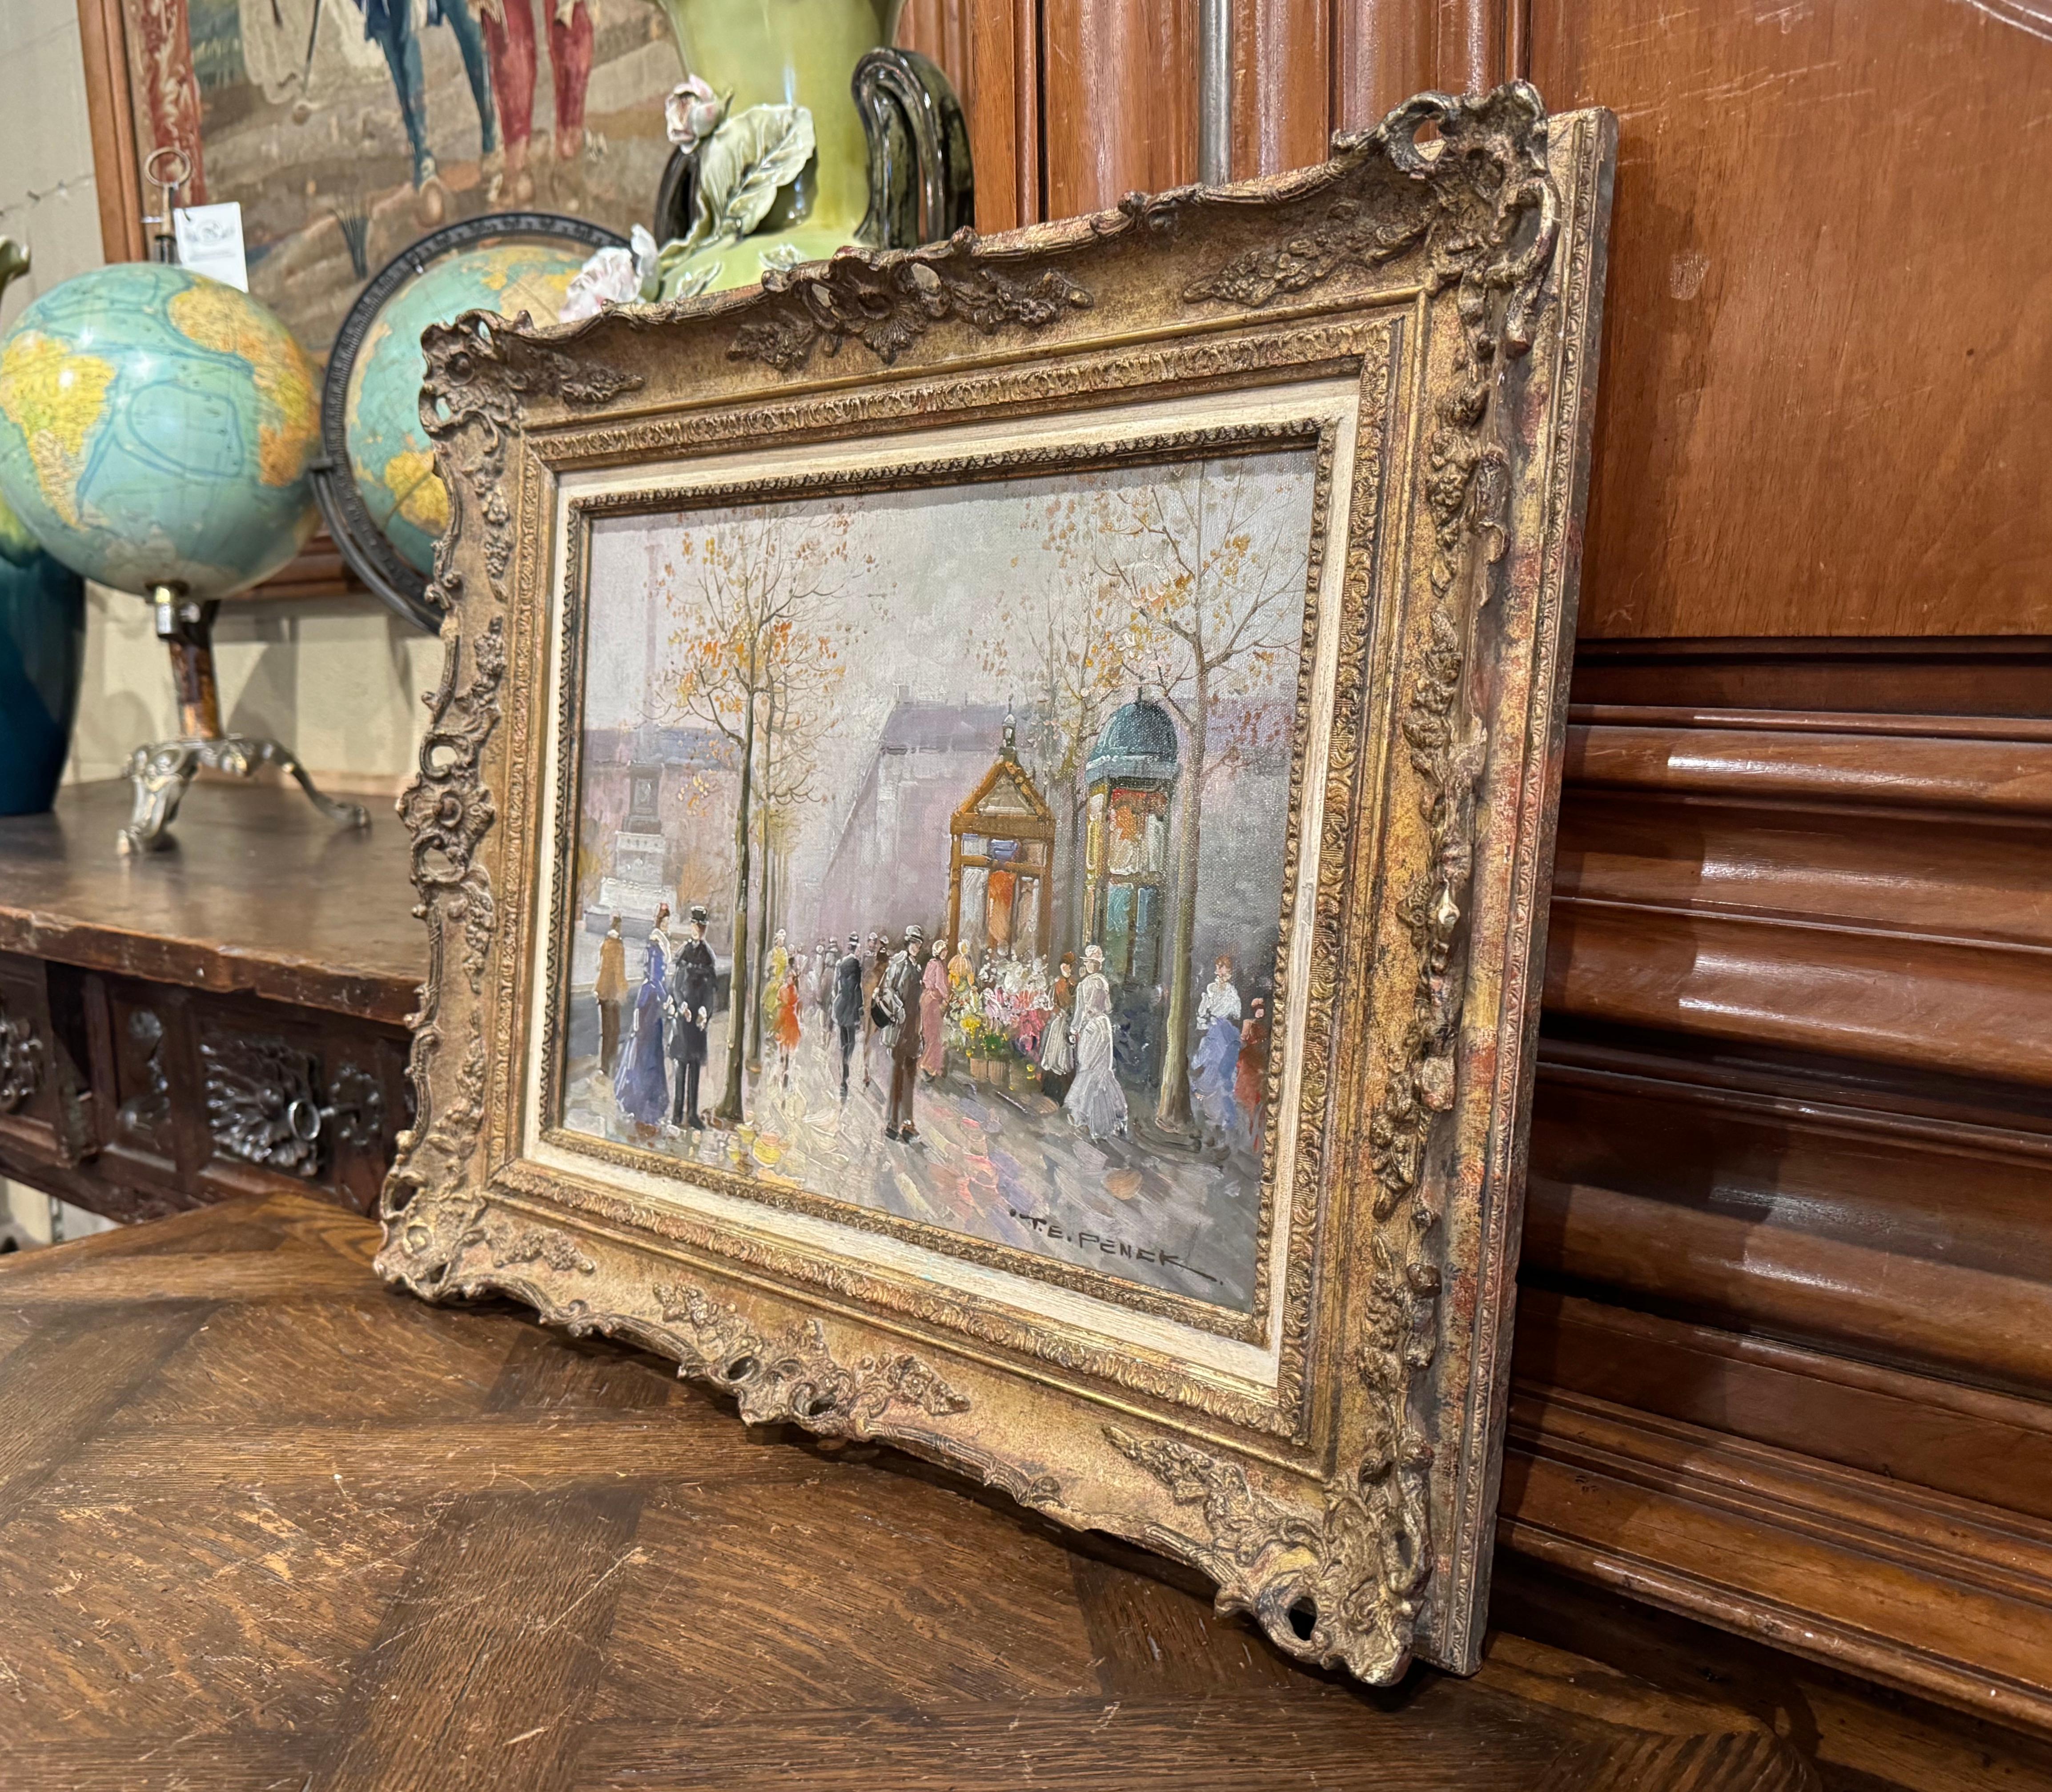 Décorez un bureau ou un cabinet de travail avec ce tableau parisien ancien et coloré. Réalisée en France vers 1960, dans un cadre en bois doré sculpté, cette œuvre d'art représente une scène parisienne du XIXe siècle dans le style impressionniste.